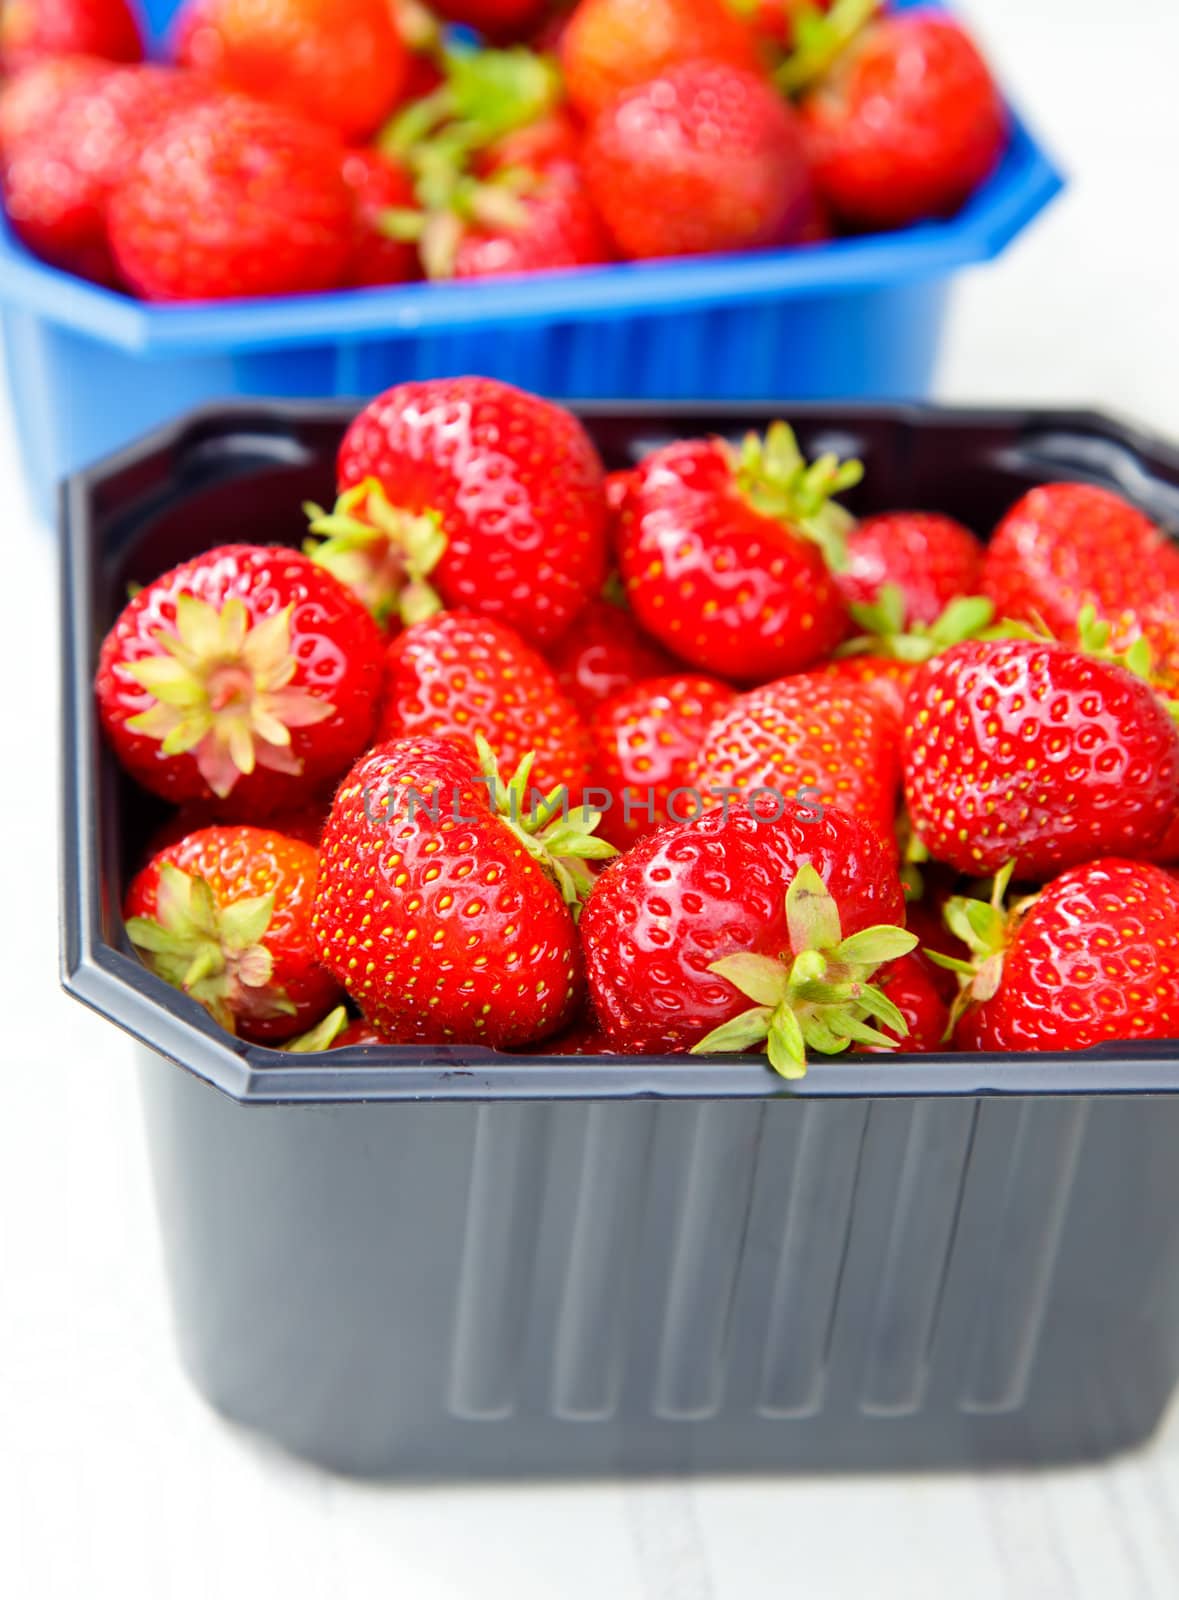 Strawberries by naumoid